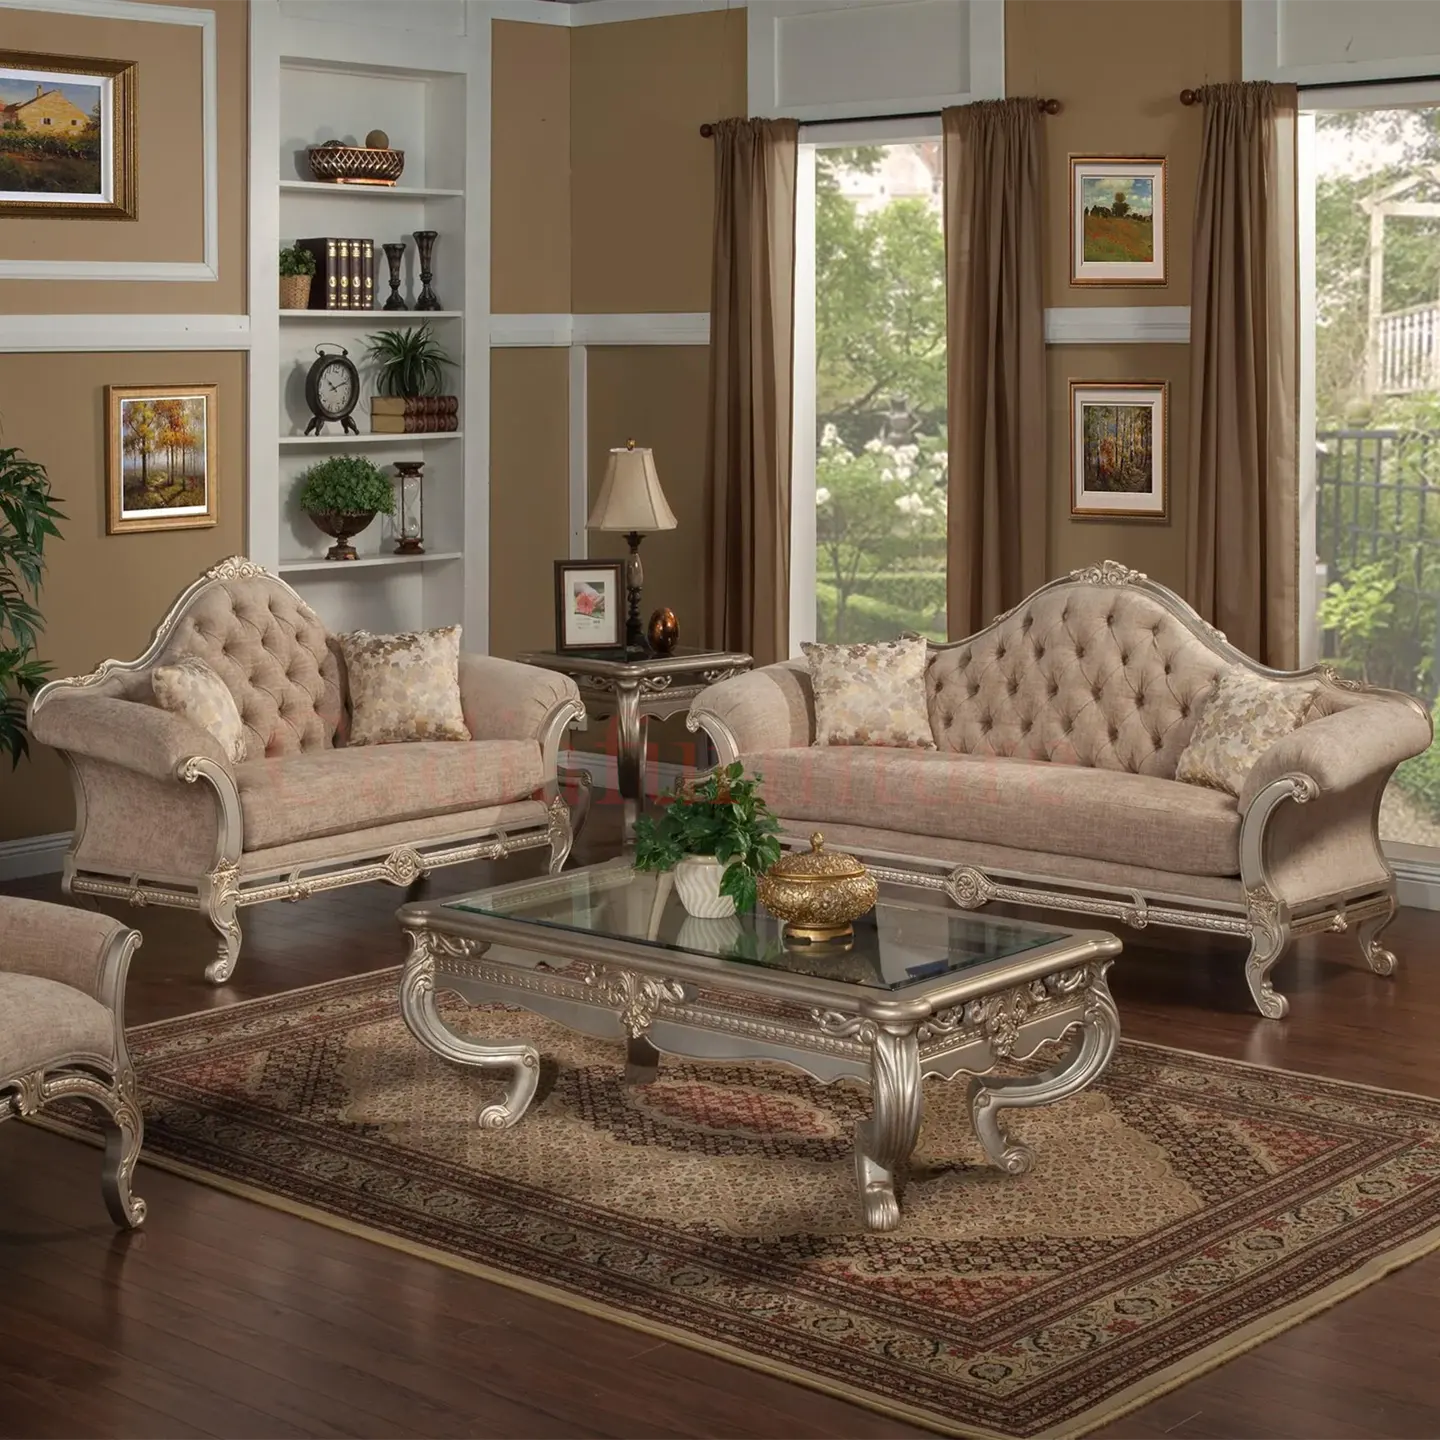 Sofá de tela de diseño árabe, sofá de madera con mesa central, diseño de madera maciza, juegos de sofás de tela para sala de estar